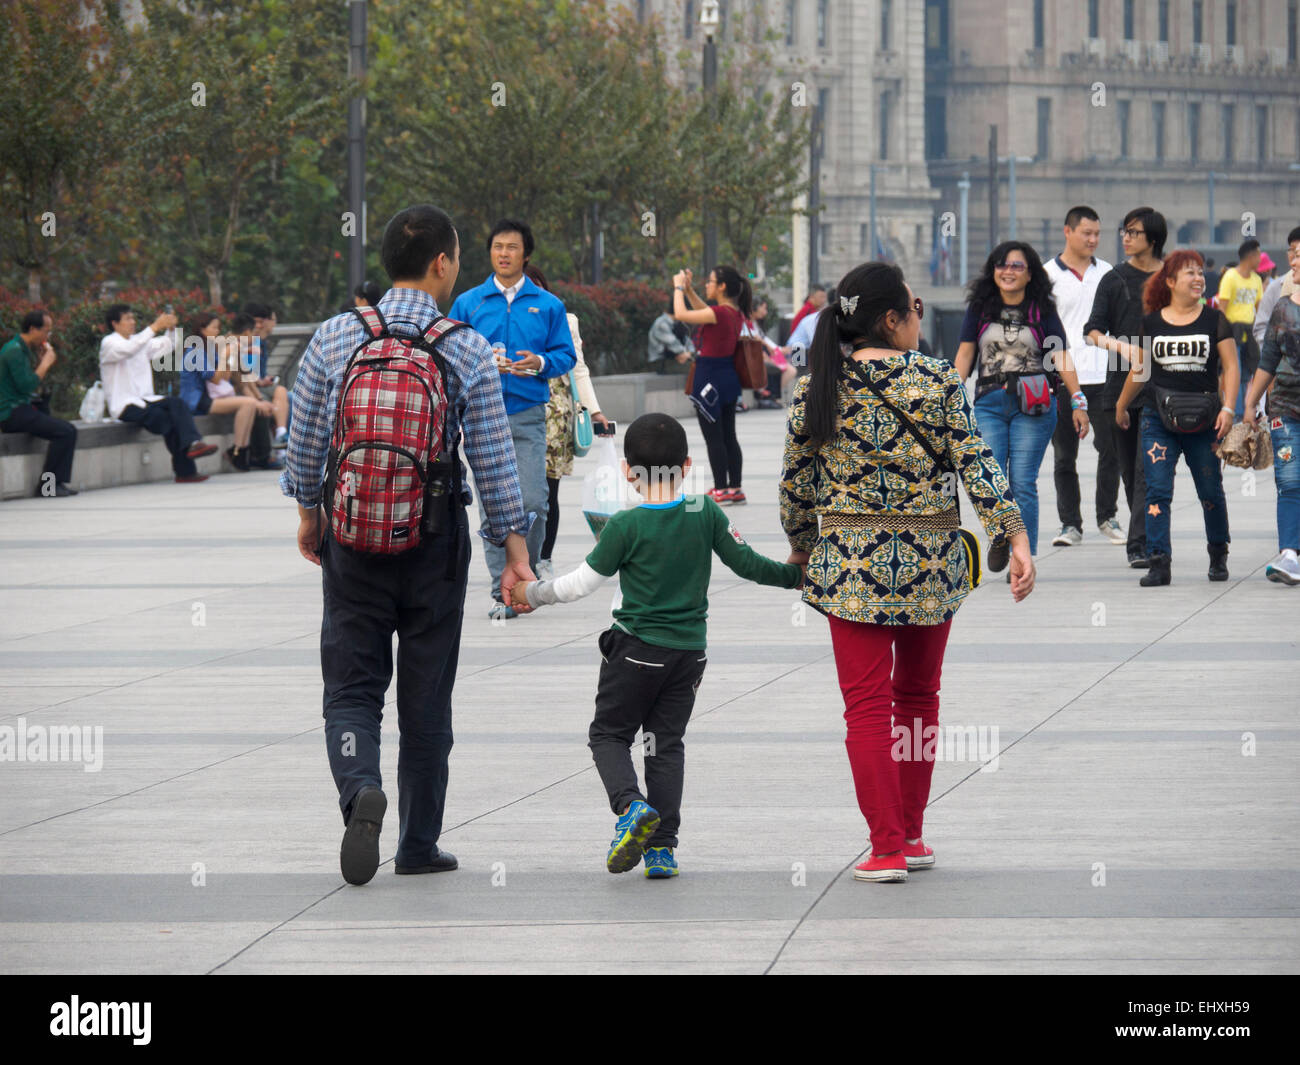 Famille chinoise - de jeunes parents se tenant la main avec un seul enfant Banque D'Images